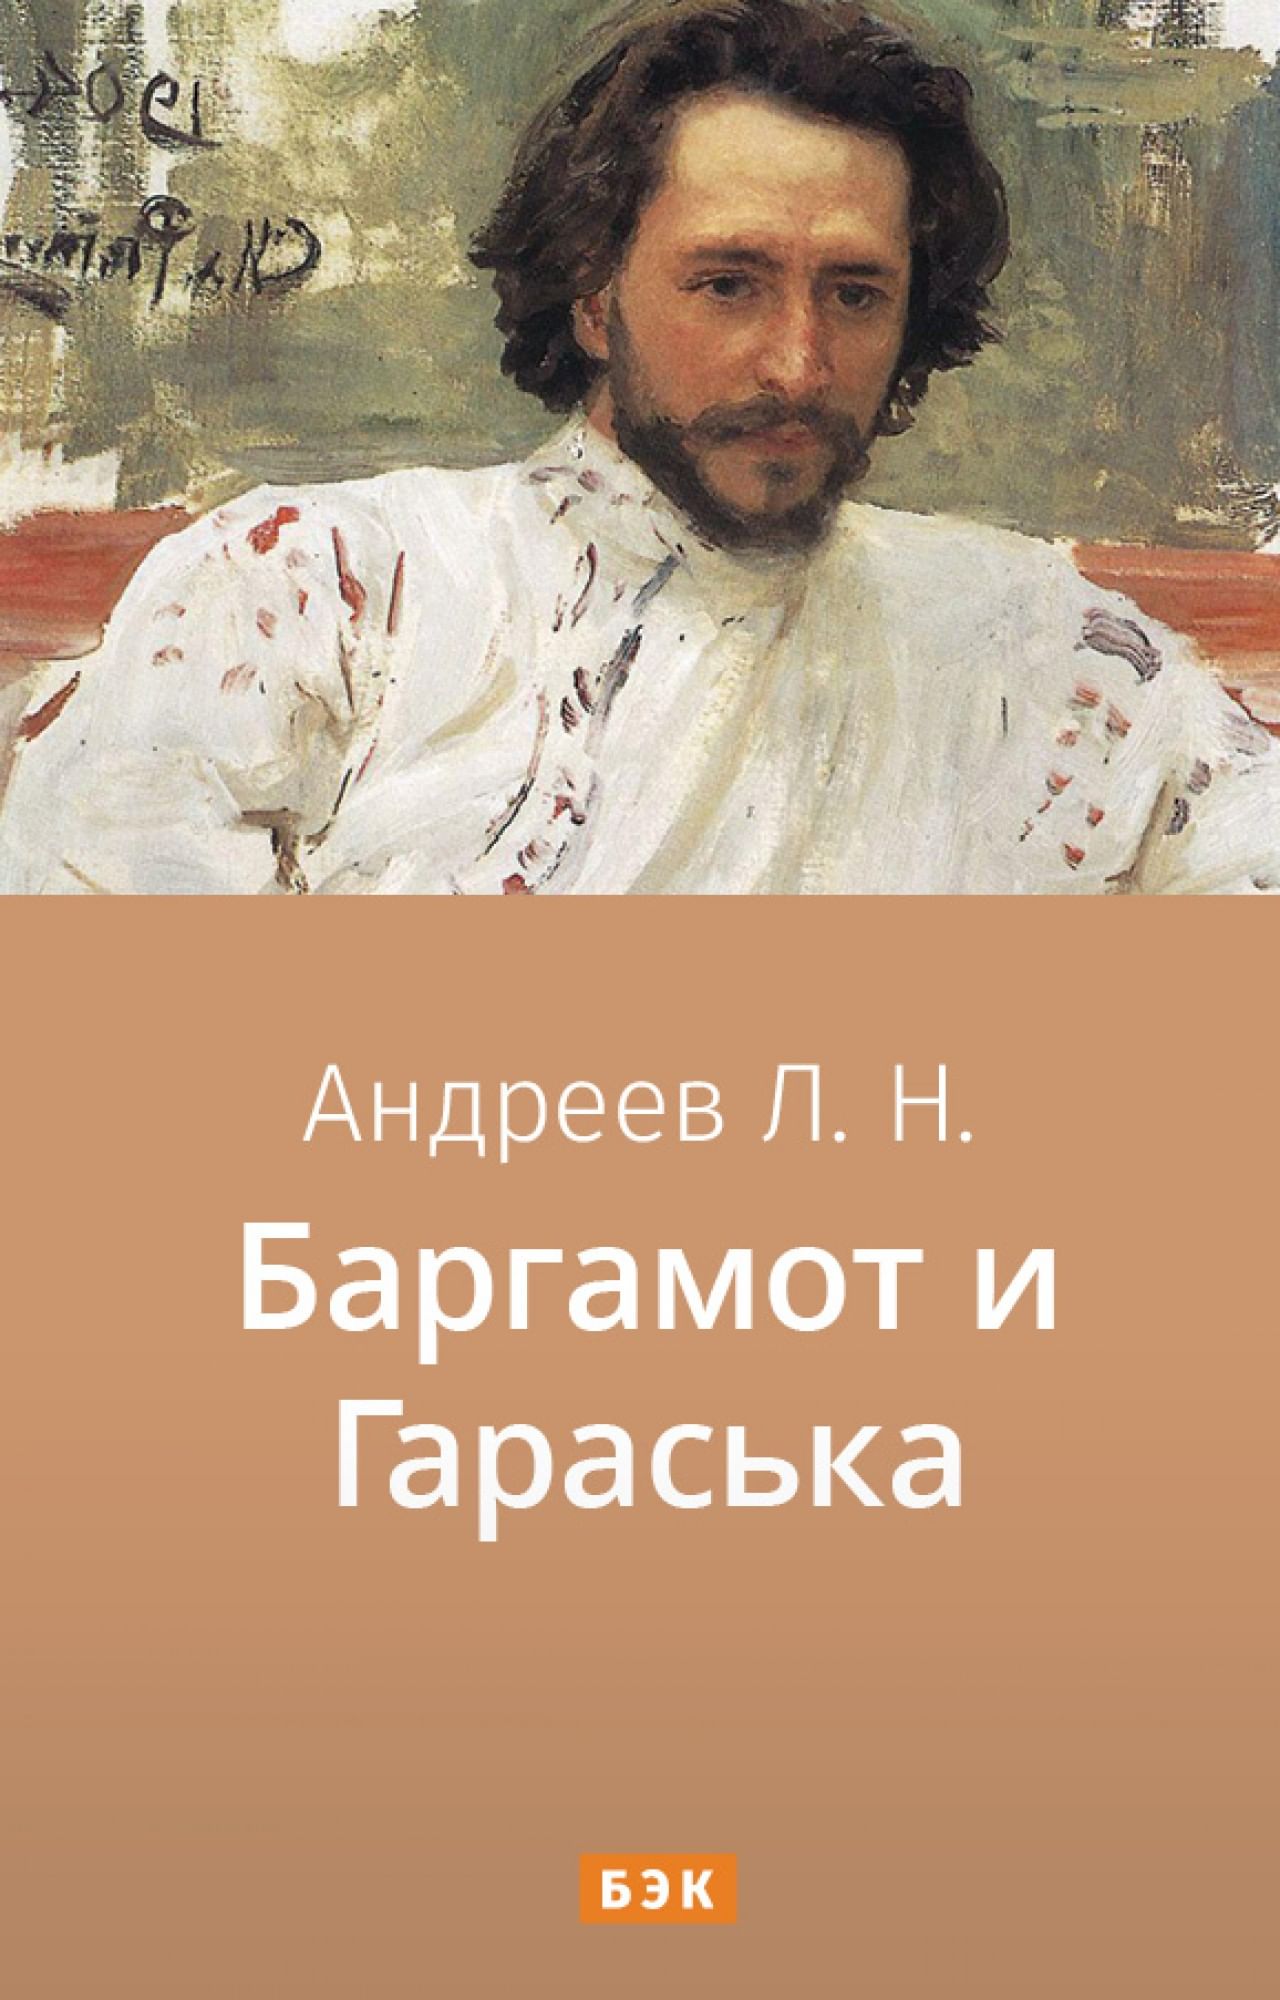 Изложение: Баргамот и Гараська. Леонид Андреев